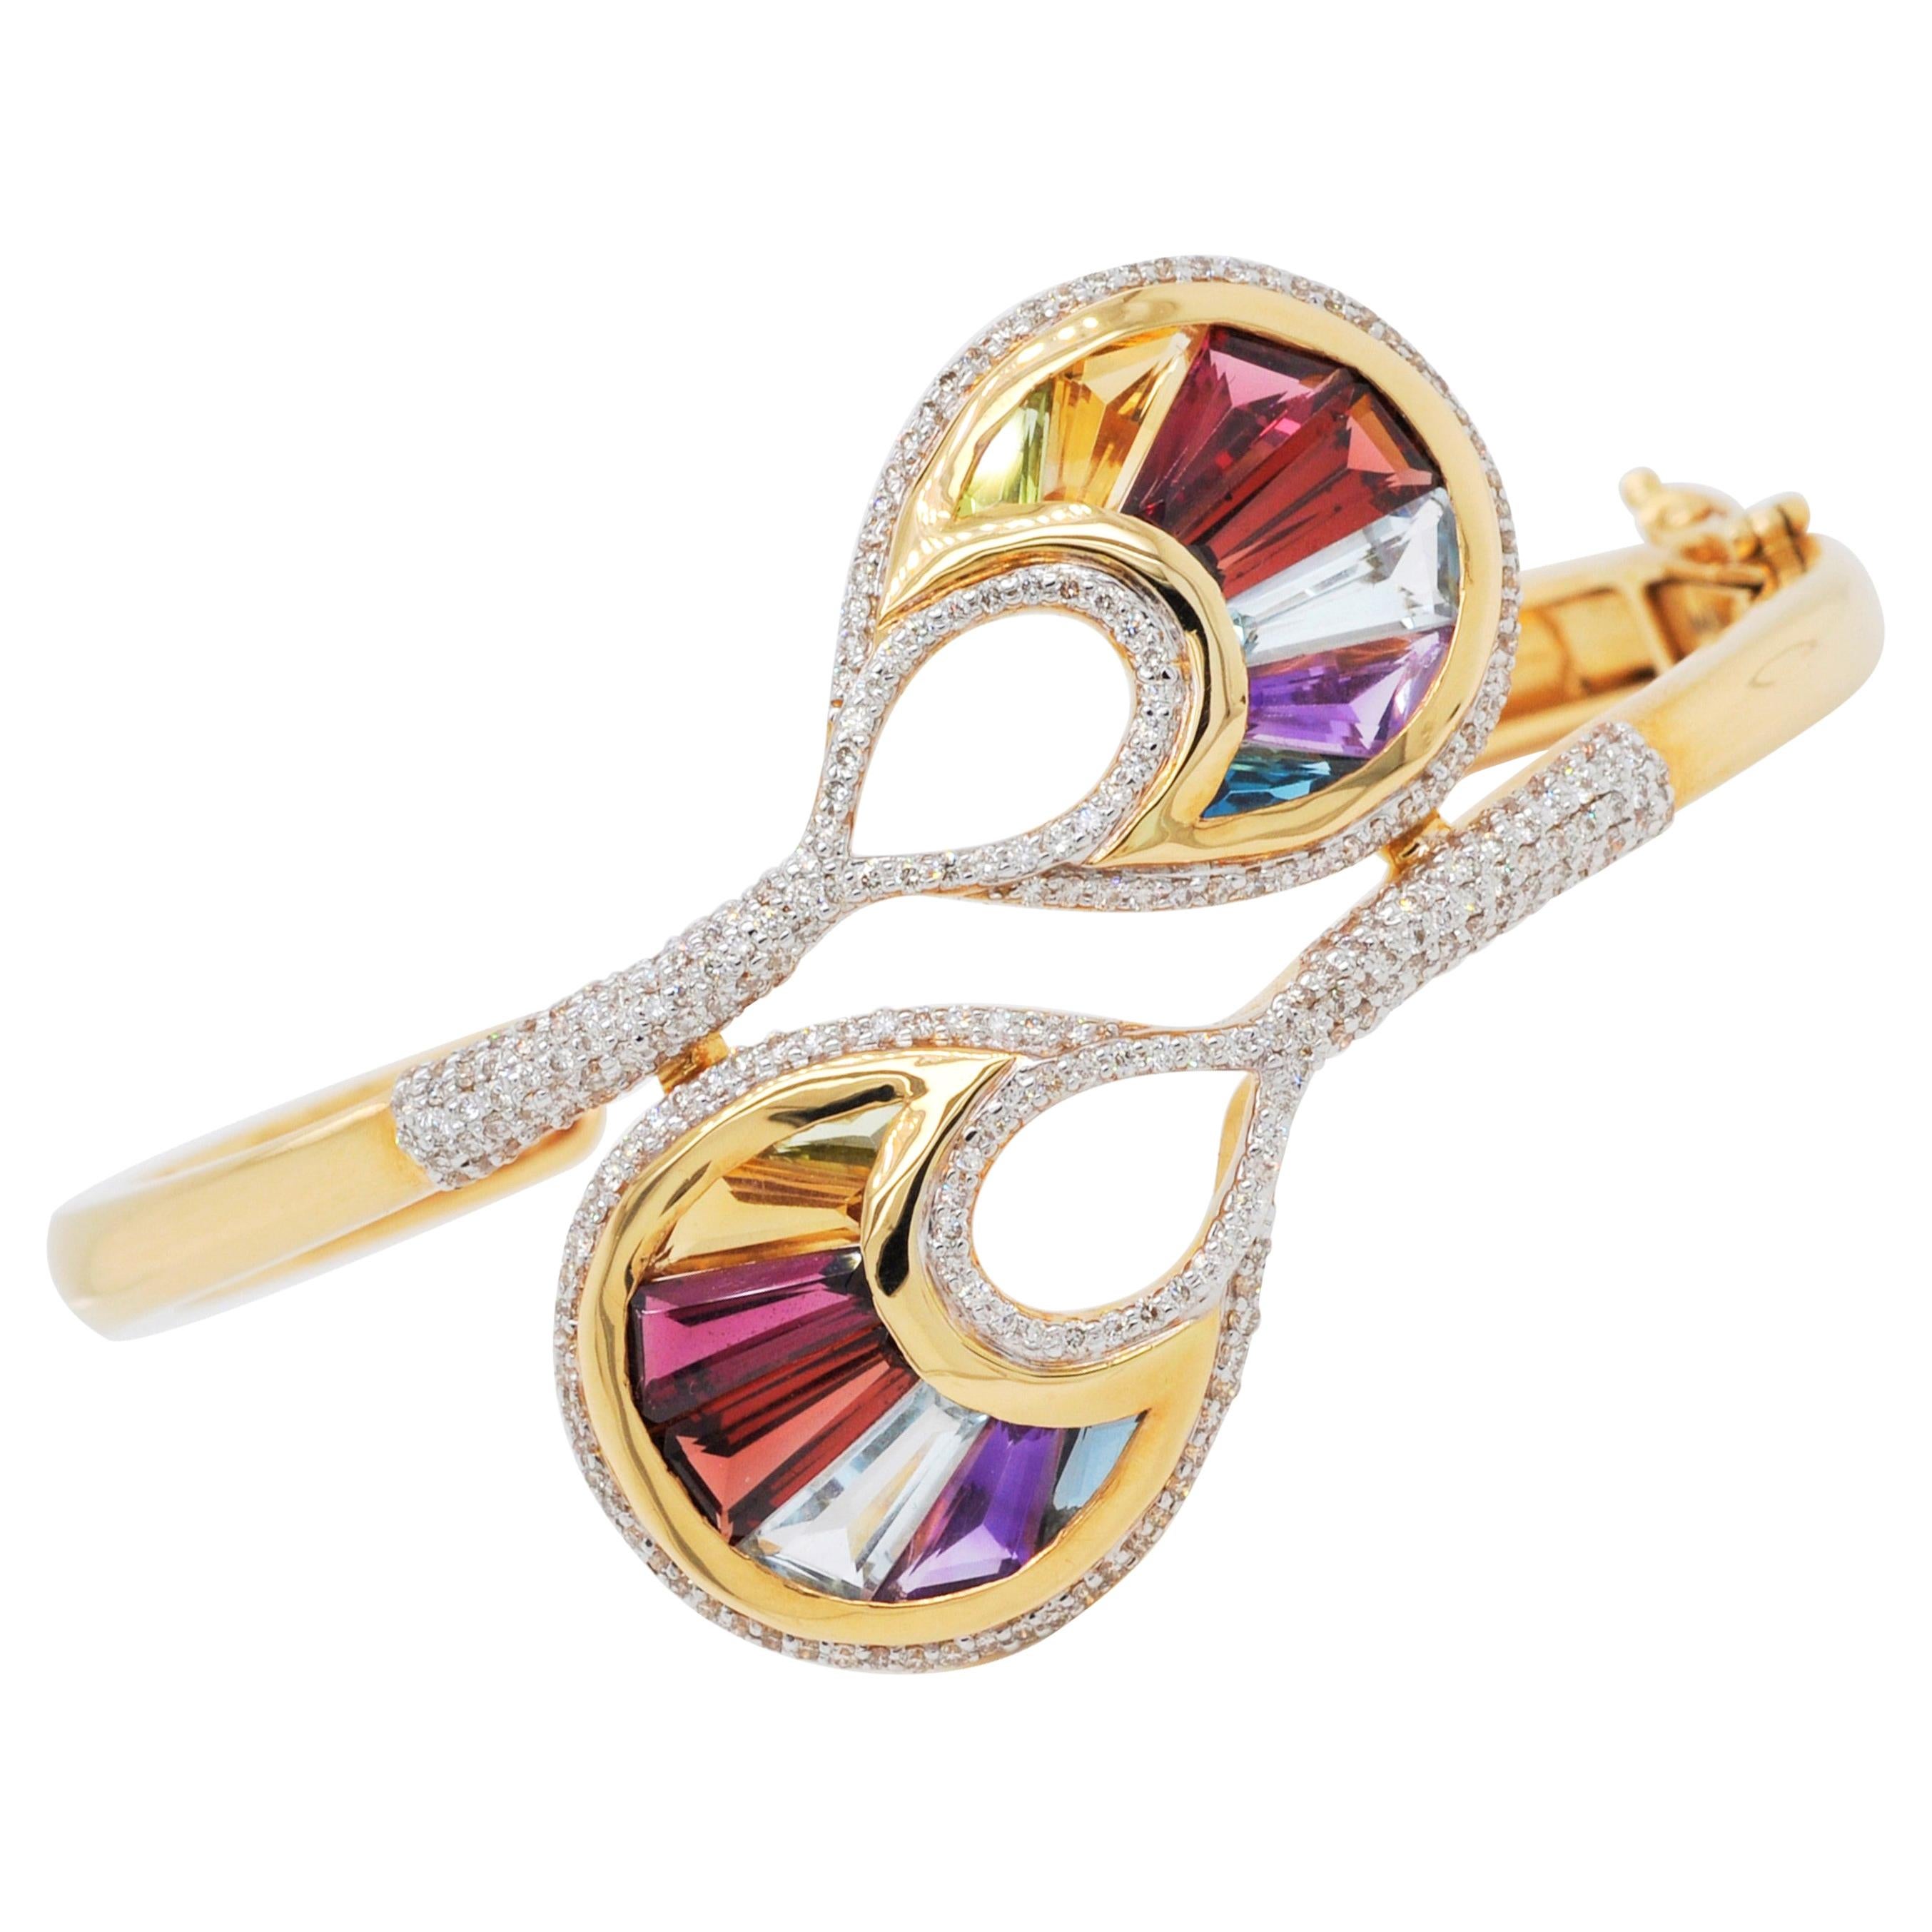 Bracelet cocktail en or 18 carats avec diamants baguettes multicolores arc-en-ciel sertis en bande